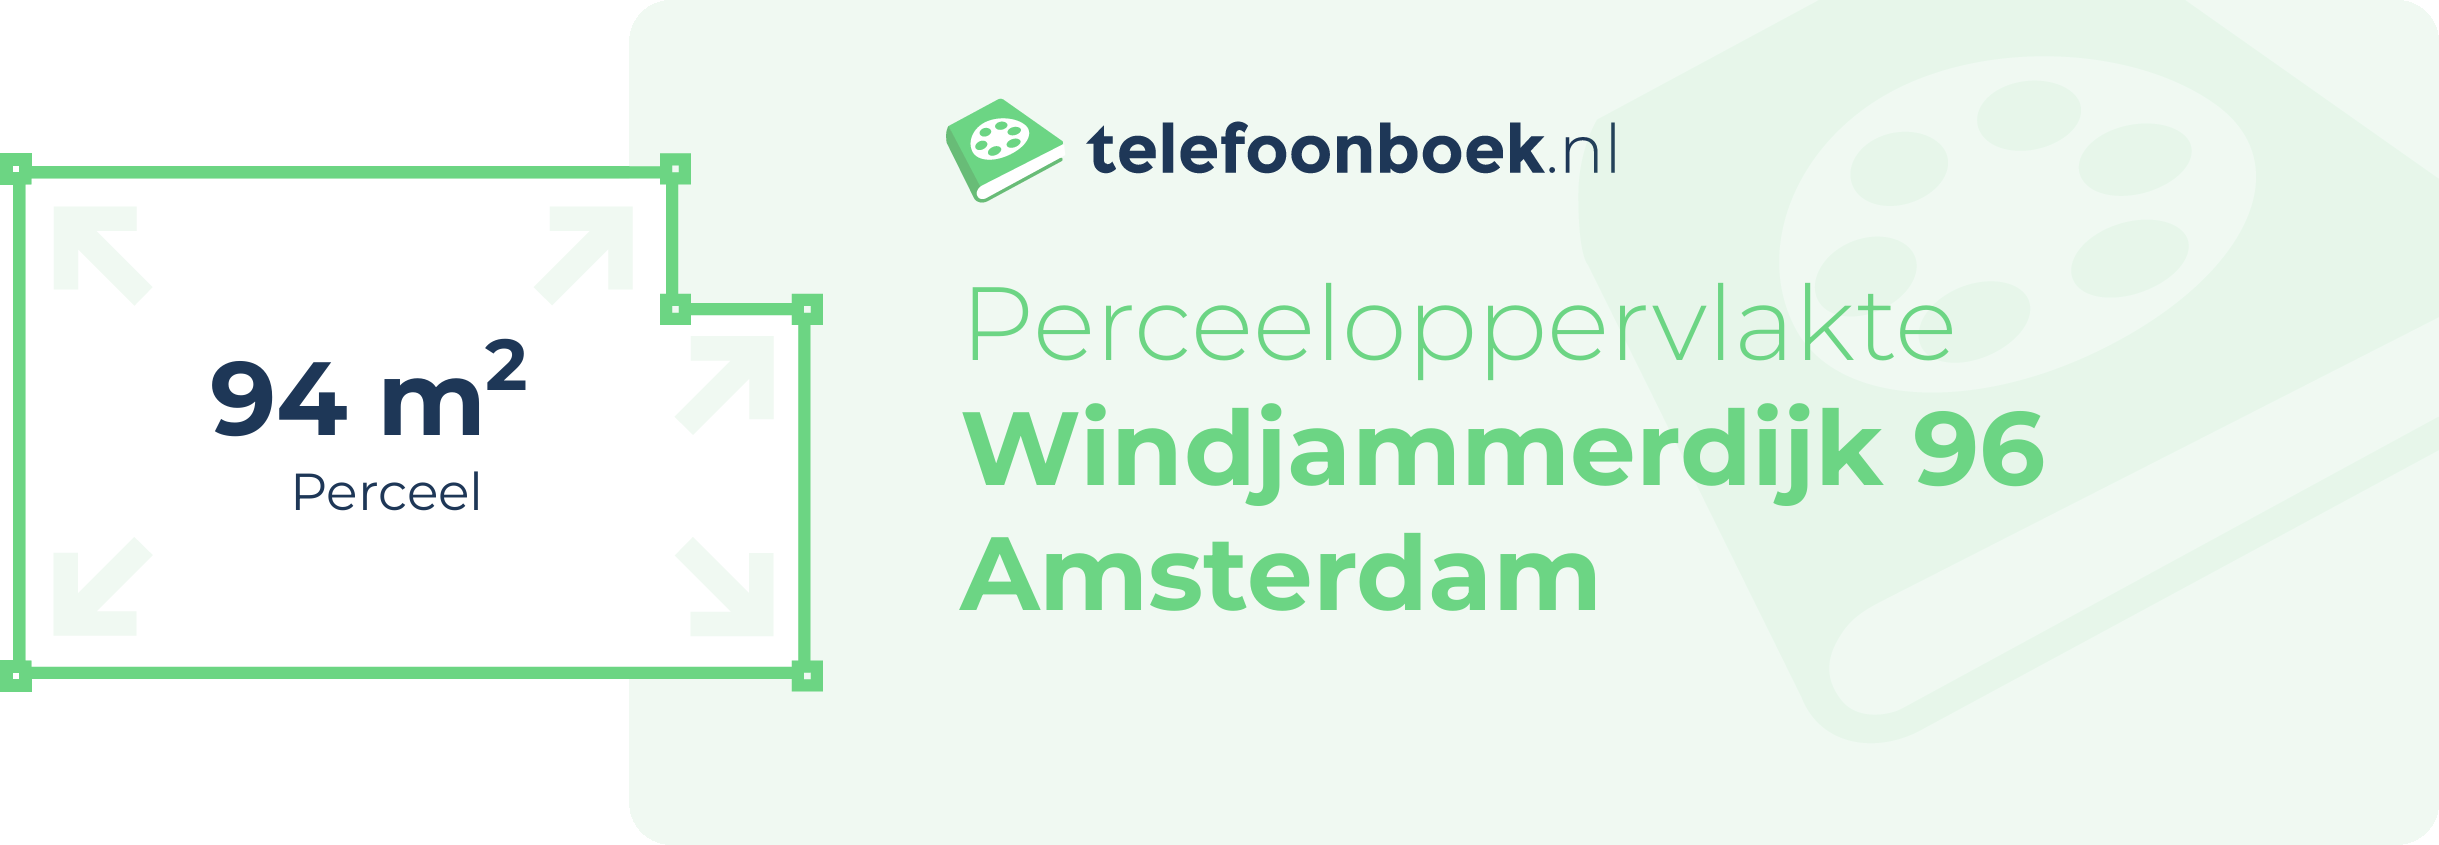 Perceeloppervlakte Windjammerdijk 96 Amsterdam